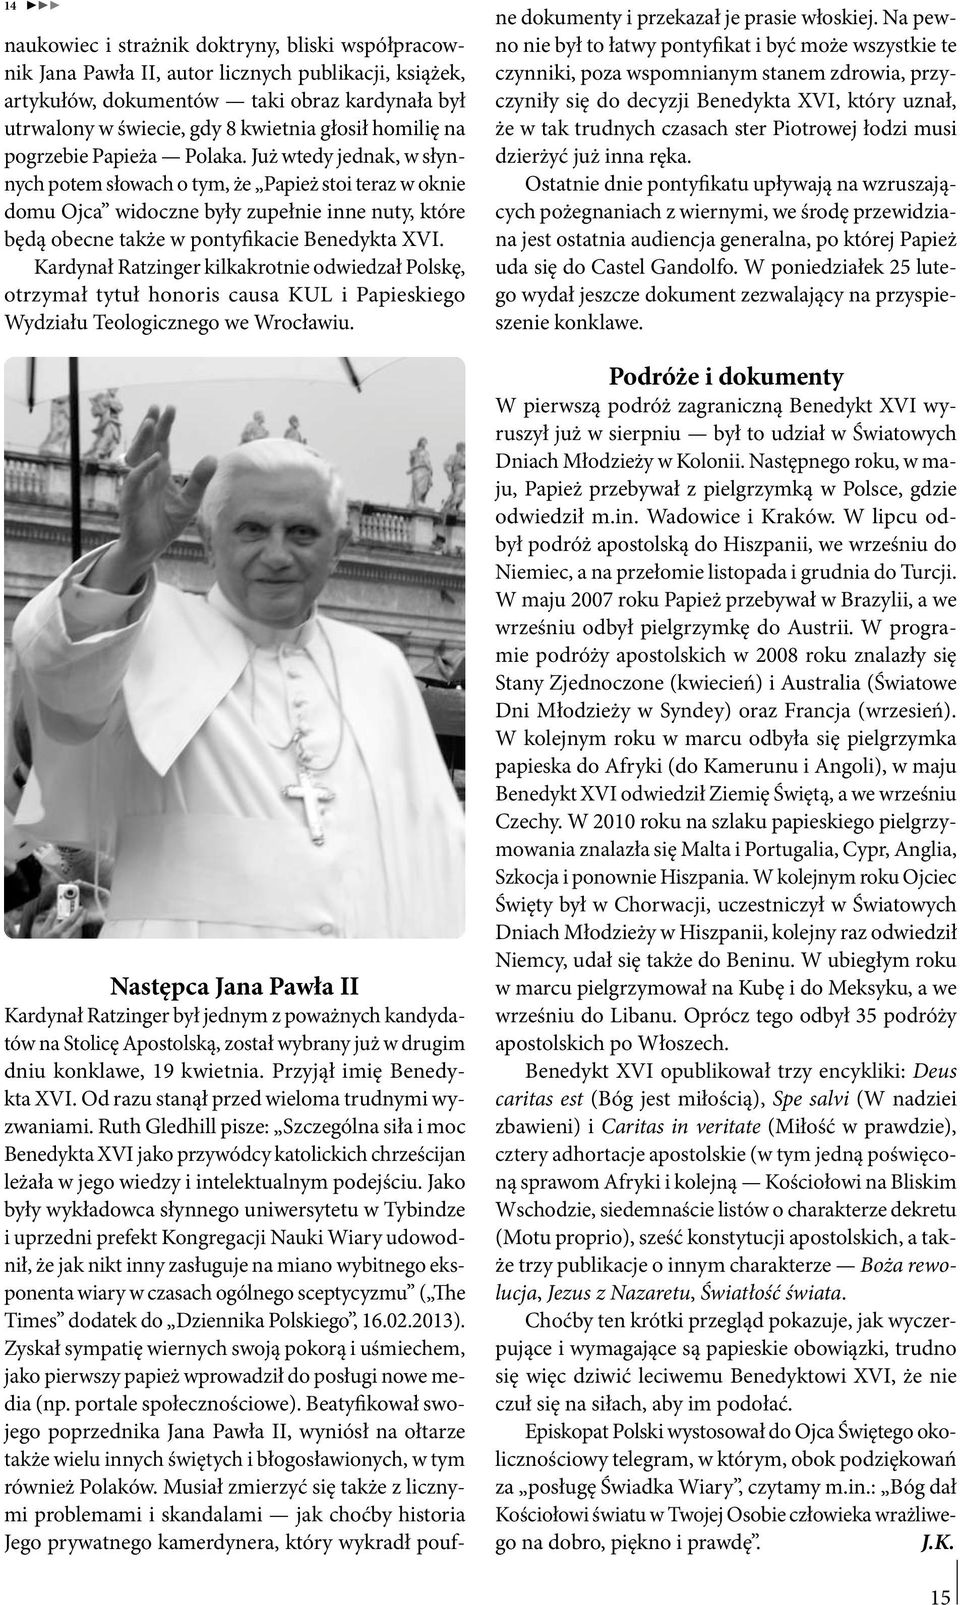 Już wtedy jednak, w słynnych potem słowach o tym, że Papież stoi teraz w oknie domu Ojca widoczne były zupełnie inne nuty, które będą obecne także w pontyfikacie Benedykta XVI.